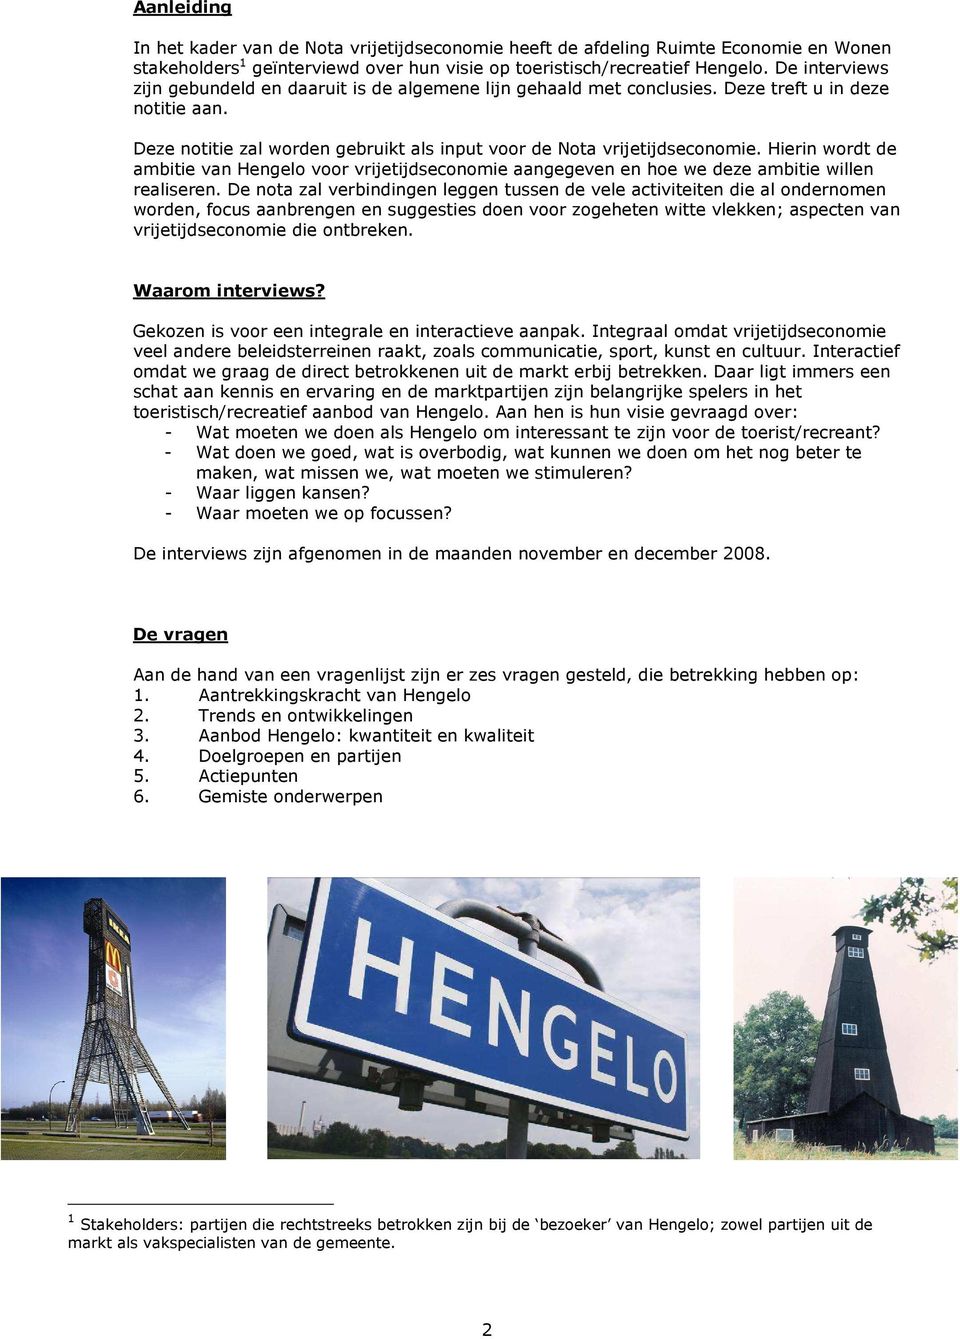 Hierin wordt de ambitie van Hengelo voor vrijetijdseconomie aangegeven en hoe we deze ambitie willen realiseren.